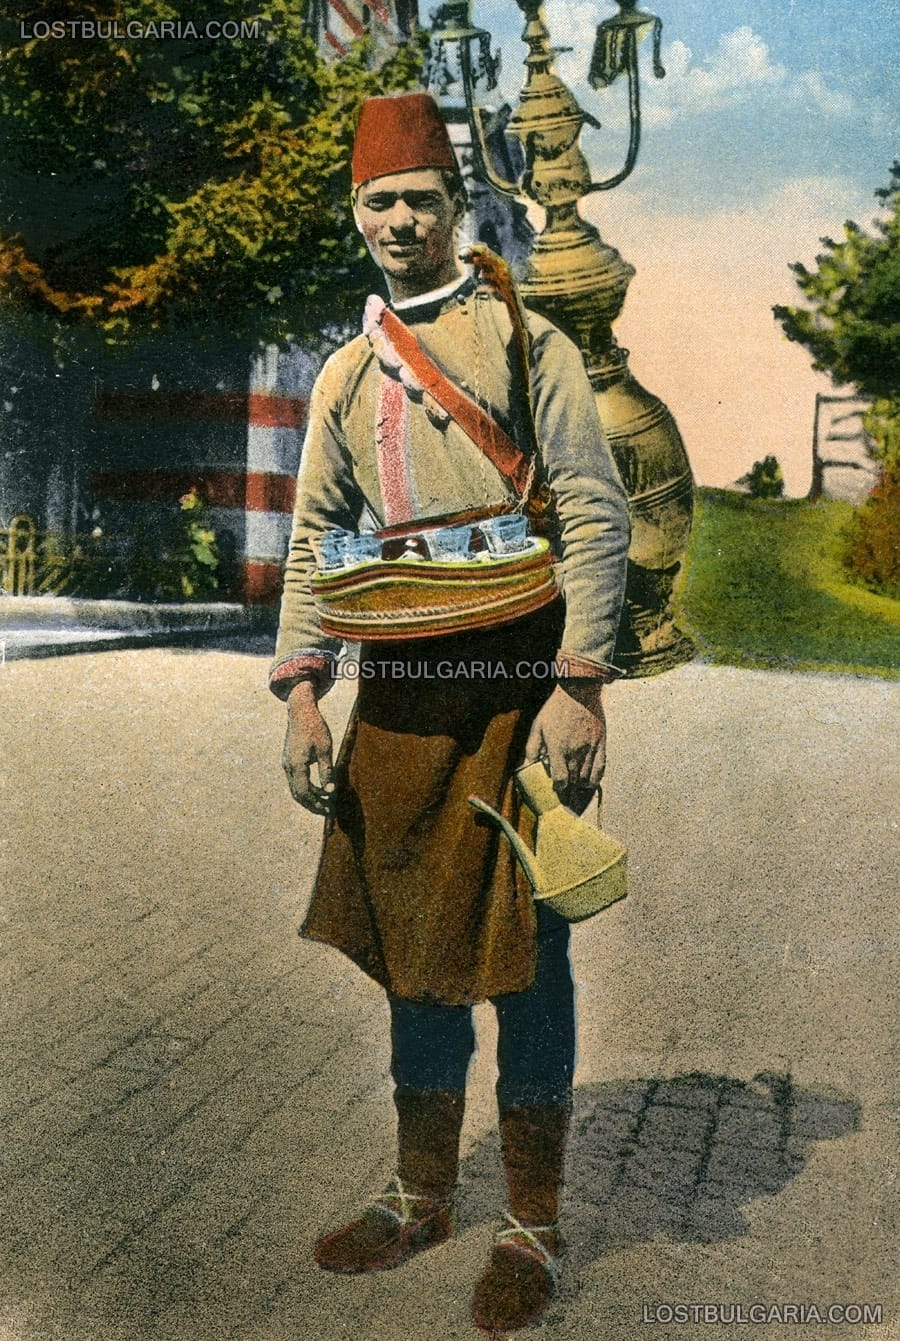 София, началото на ХХ век, албанец - продавач на захарен сироп, облечен в характерна носия